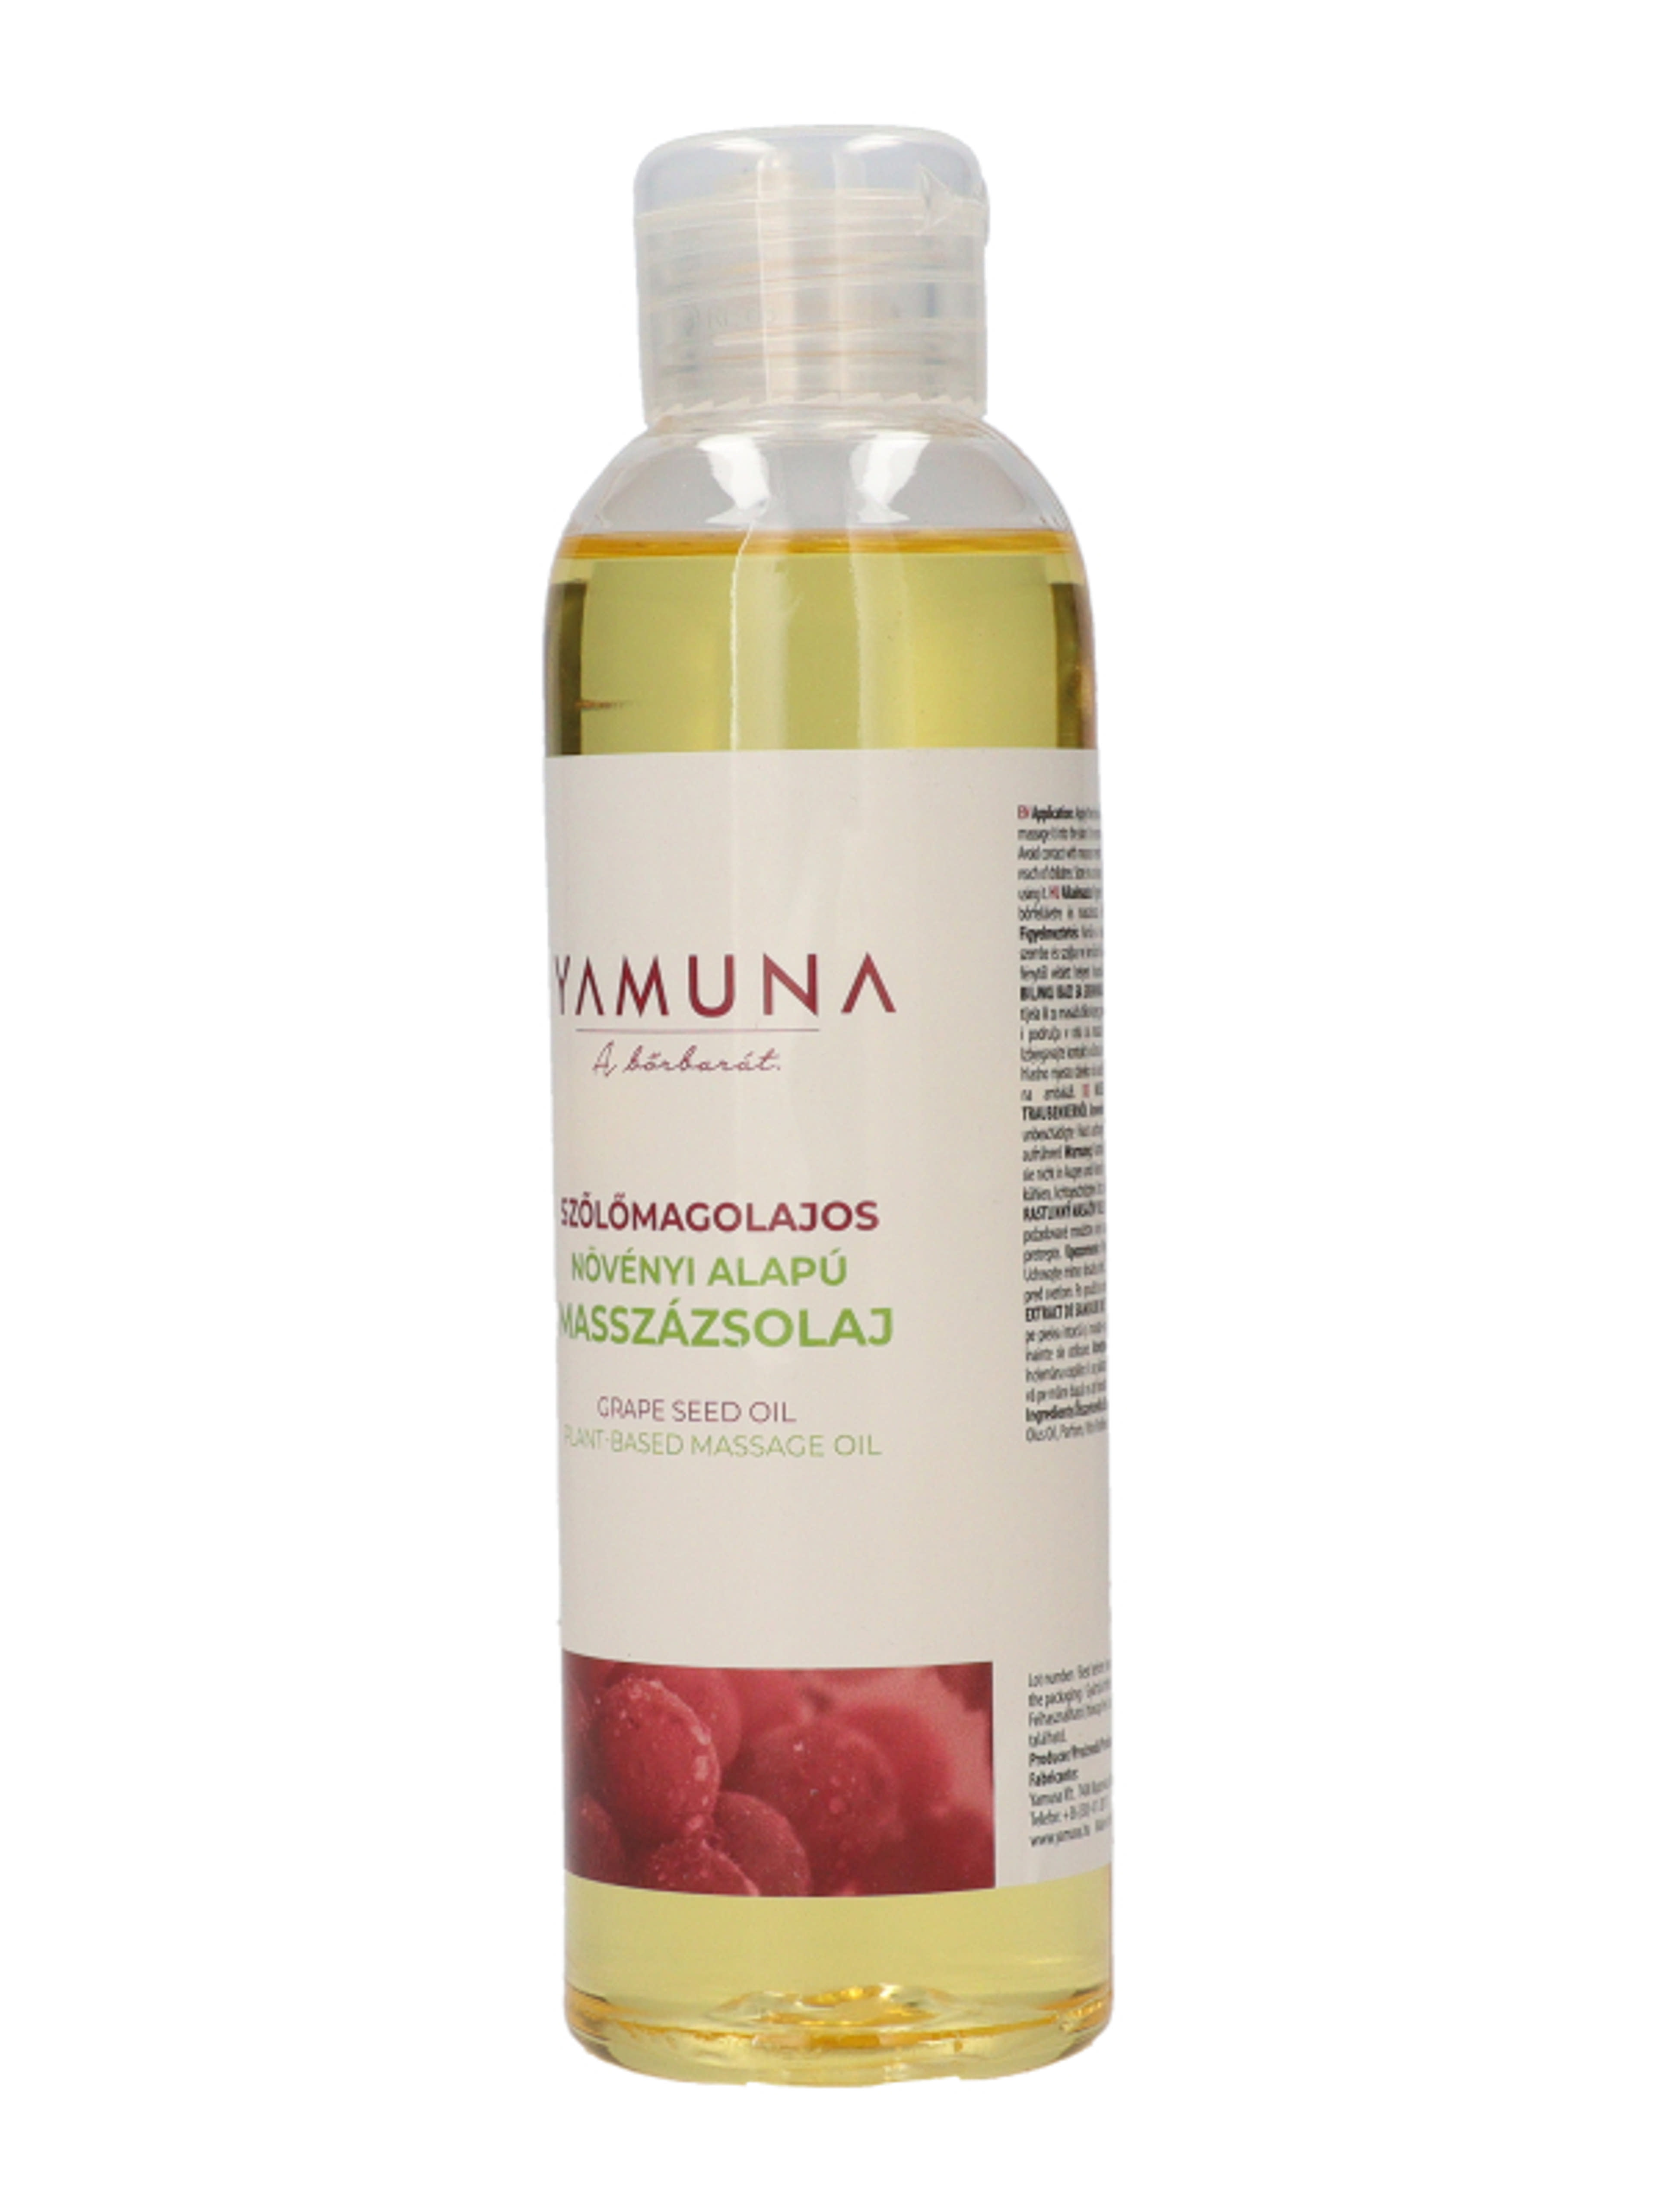 Yamuna szőlőmagos masszázsolaj - 250 ml-4